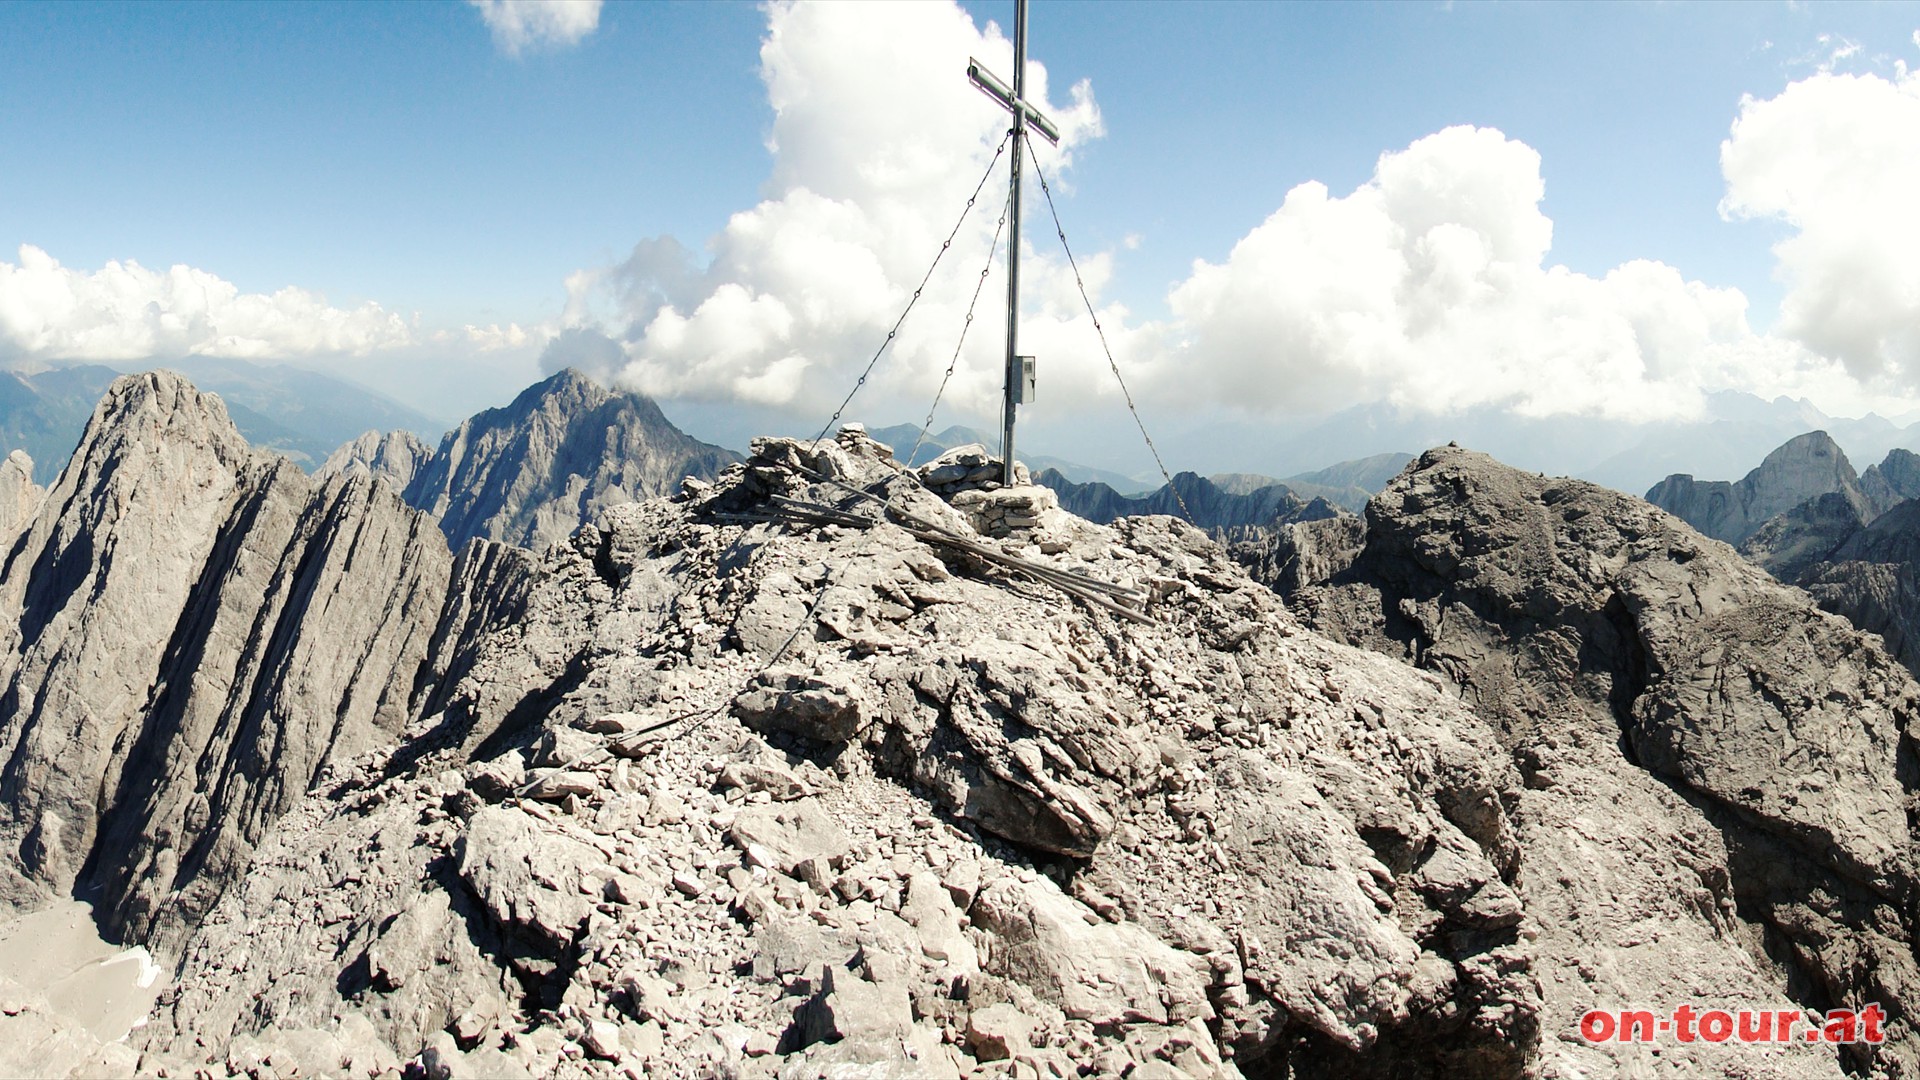 Nach einer abschließenden leichten Kletterei stehen wir am höchsten Gipfel der Lienzer Dolomiten.